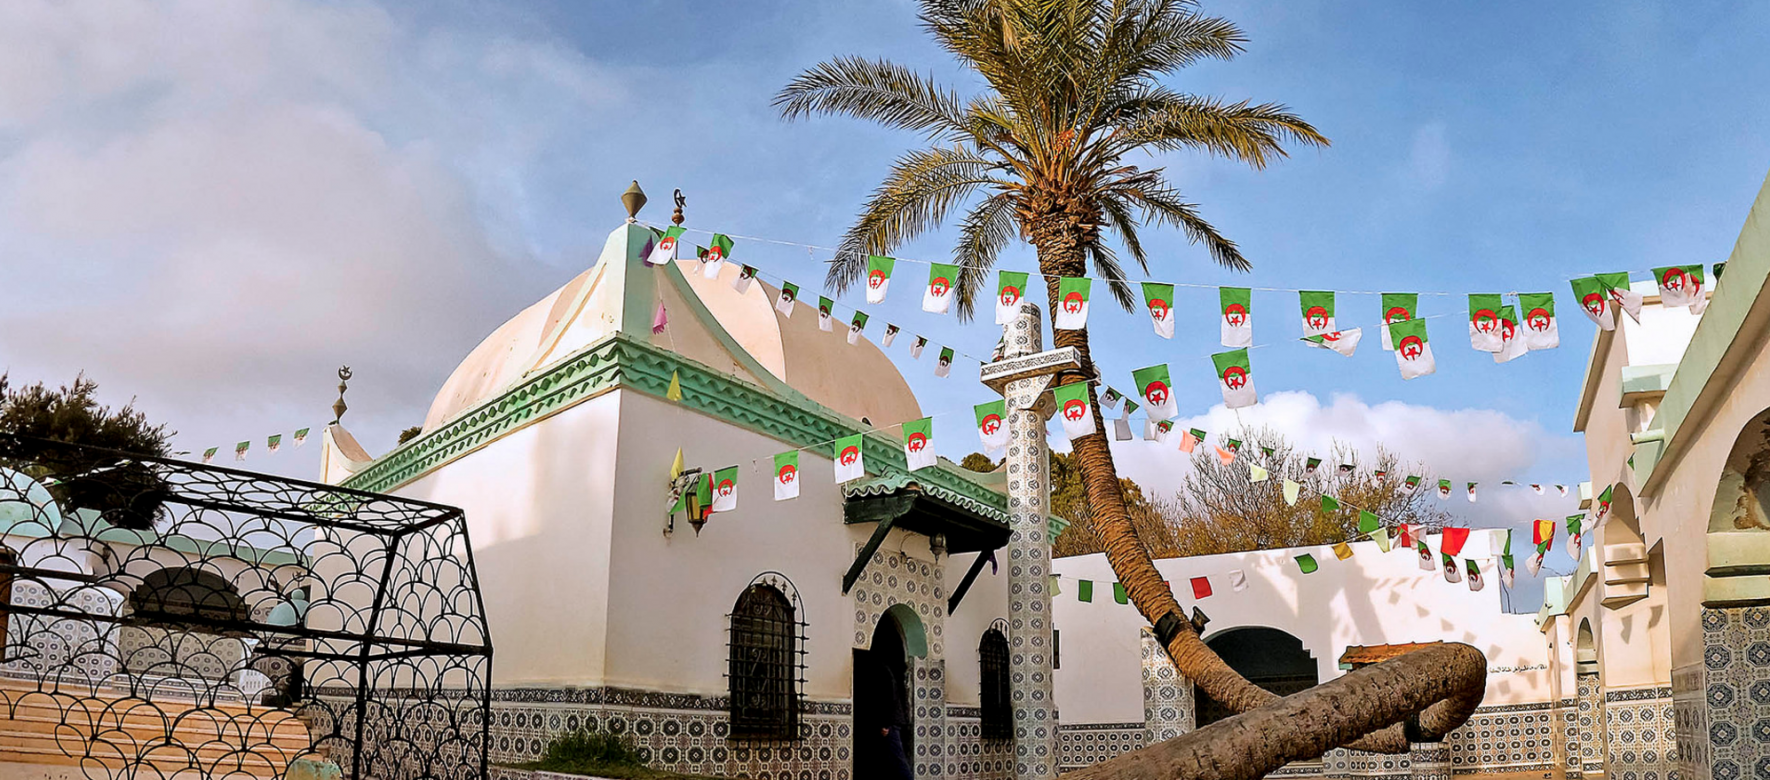 Comment l'Algérie peut-elle renforcer son attractivité touristique ?